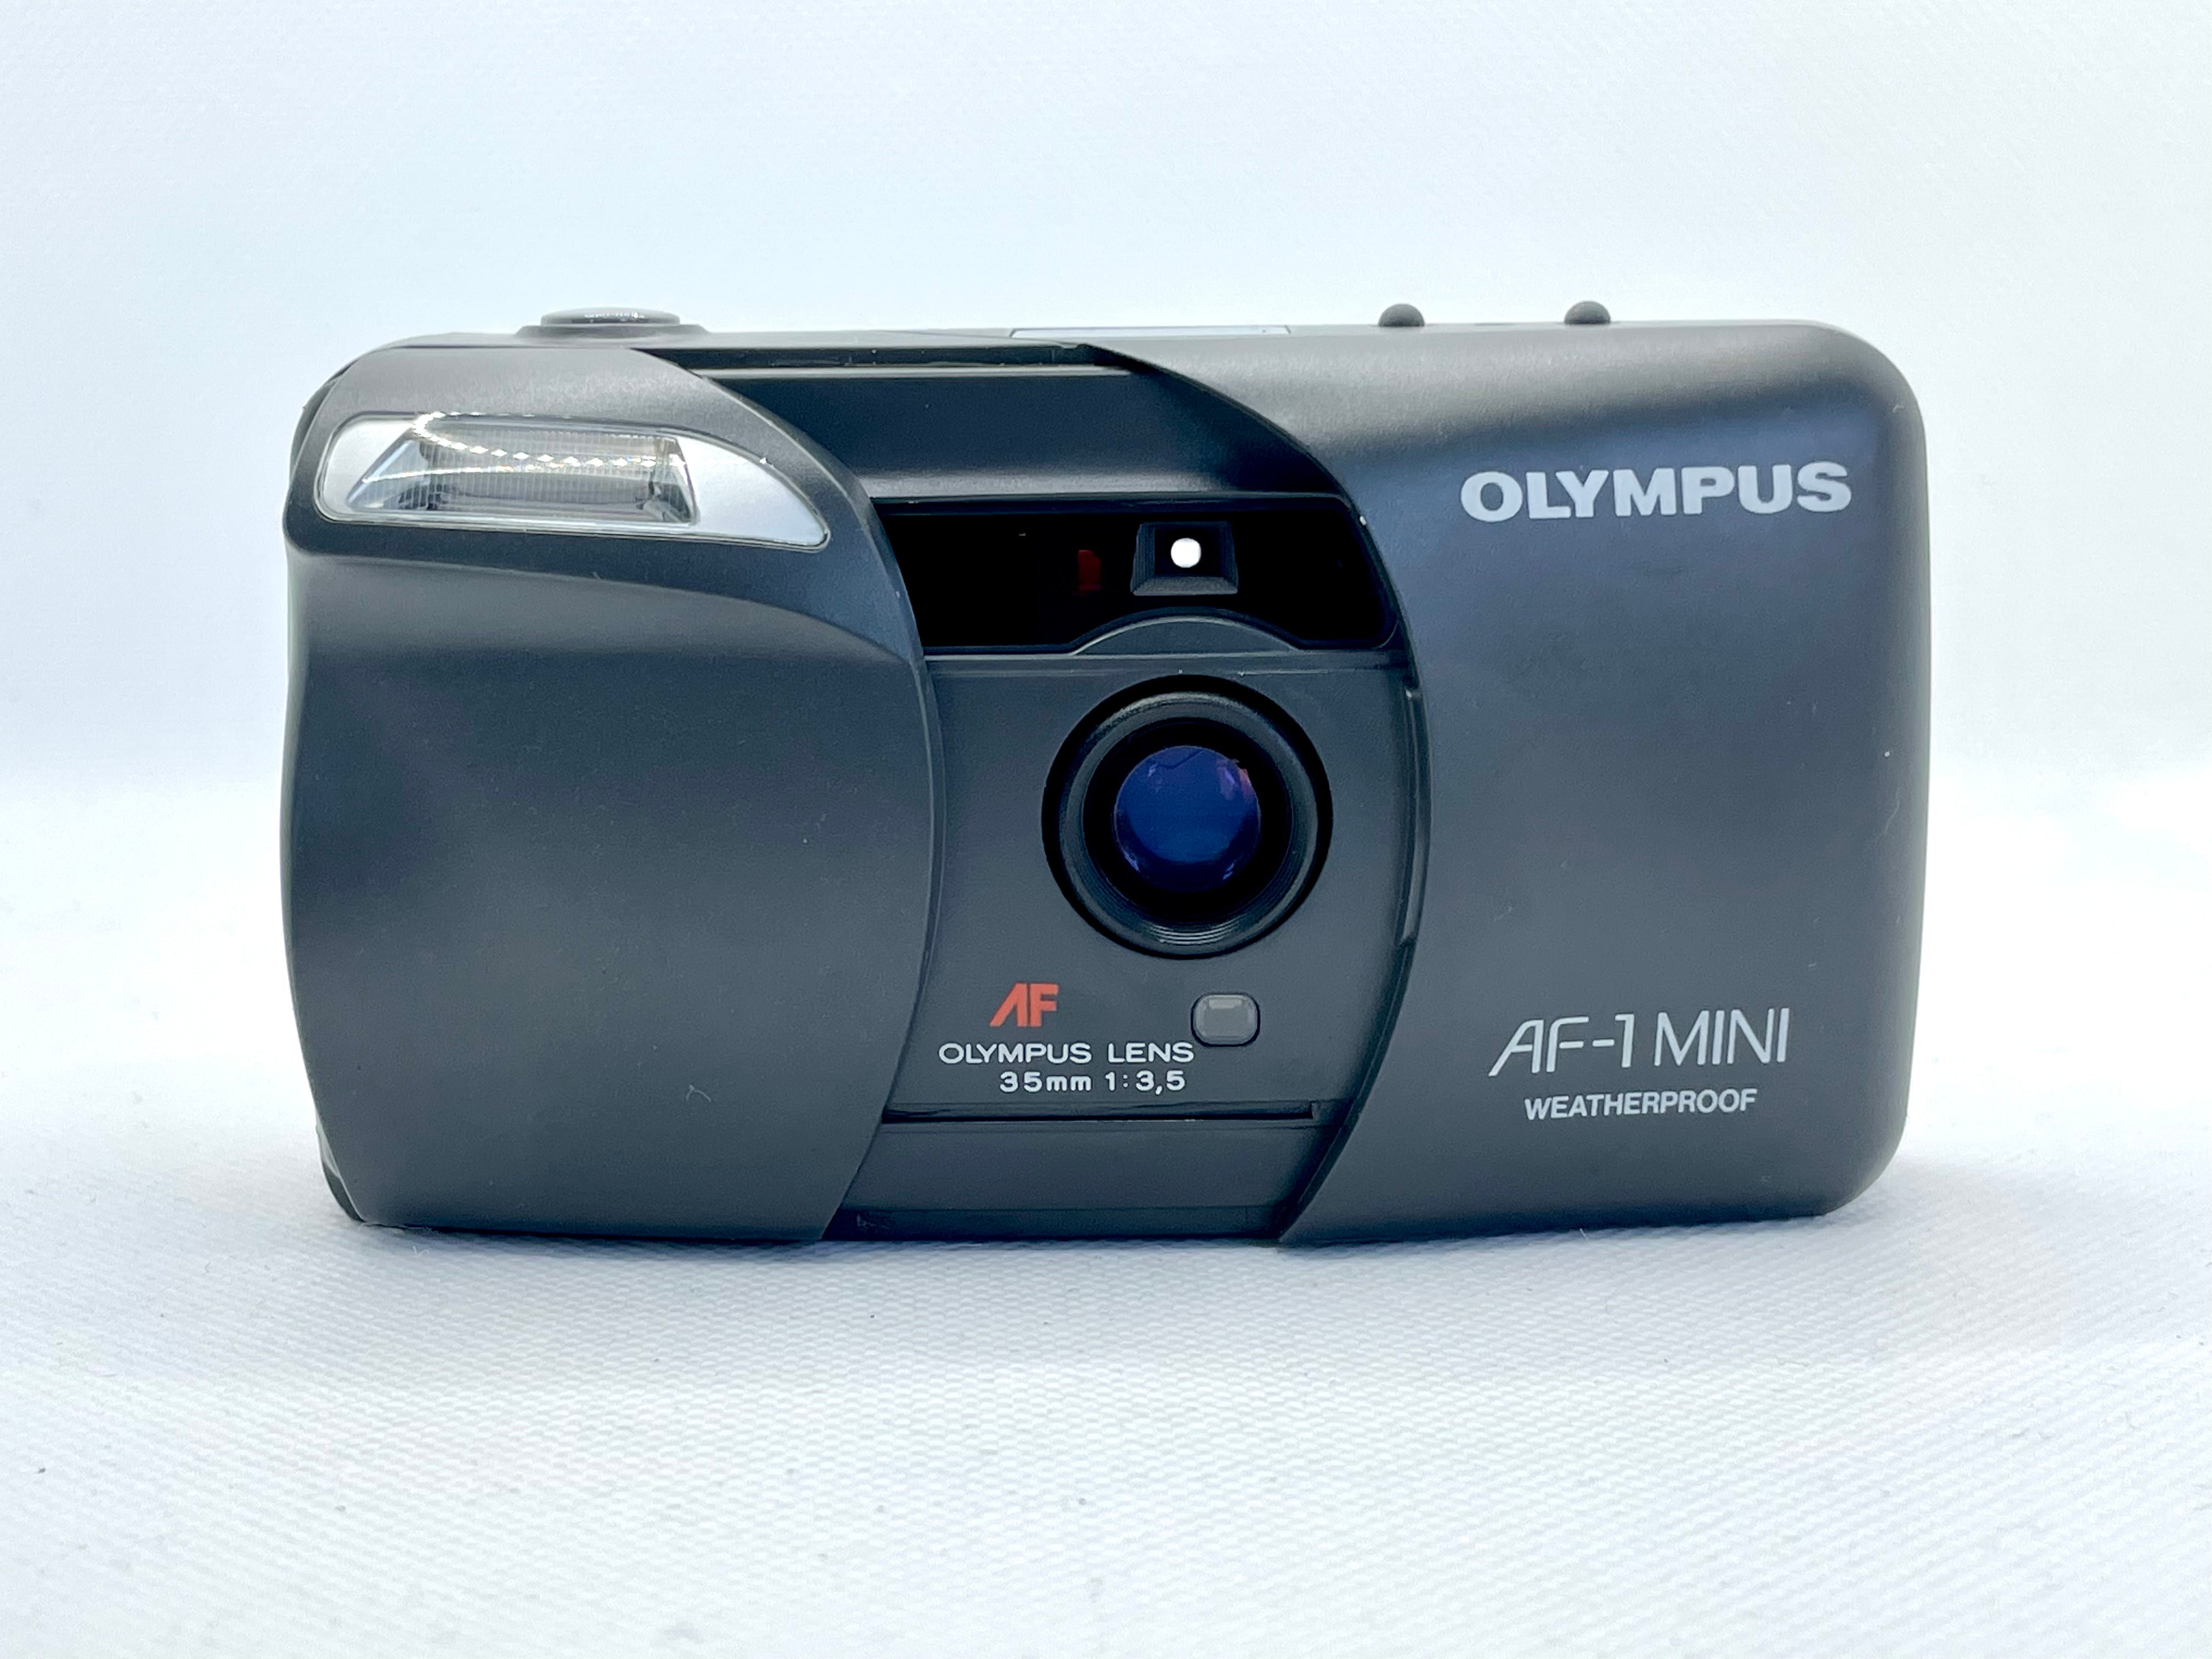 Olympus AF-1 MINI